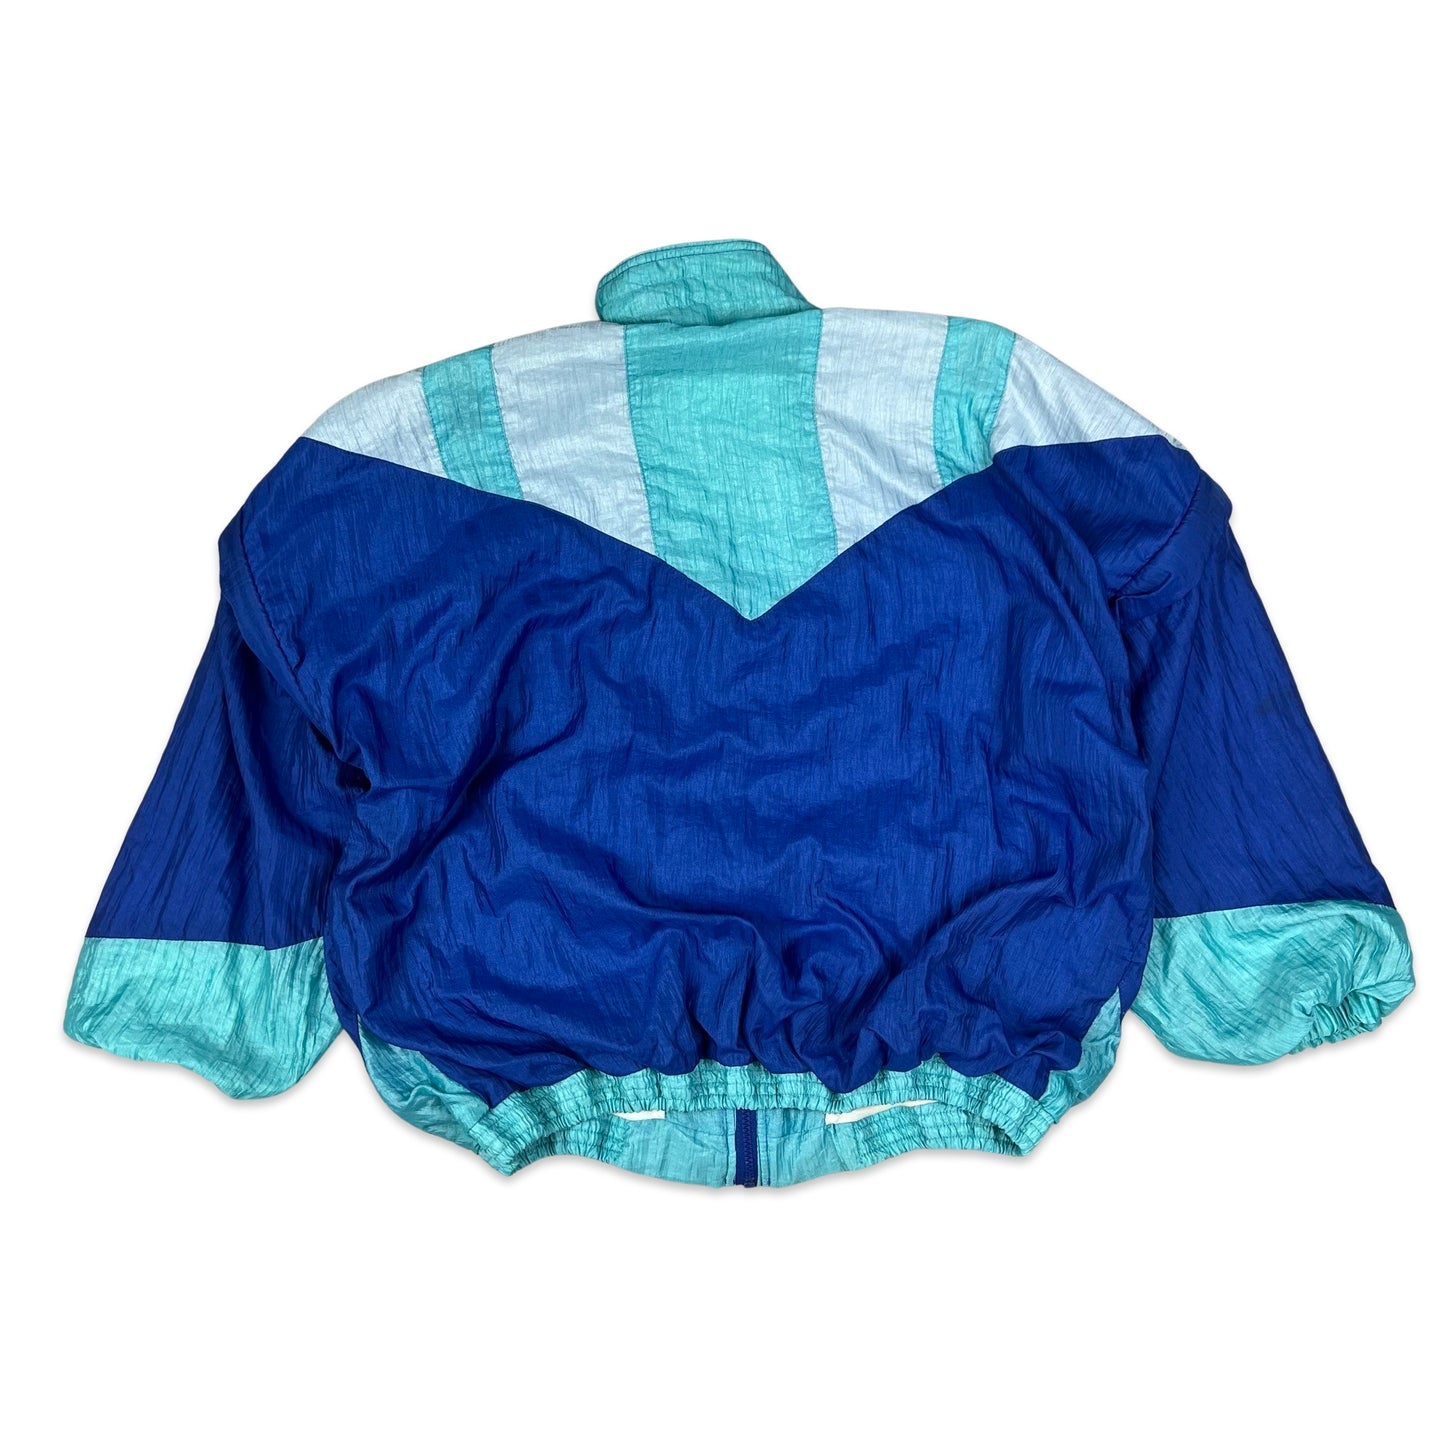 Vintage 80s 90s Camel Active Blue Shell Jacket XXL 3XL